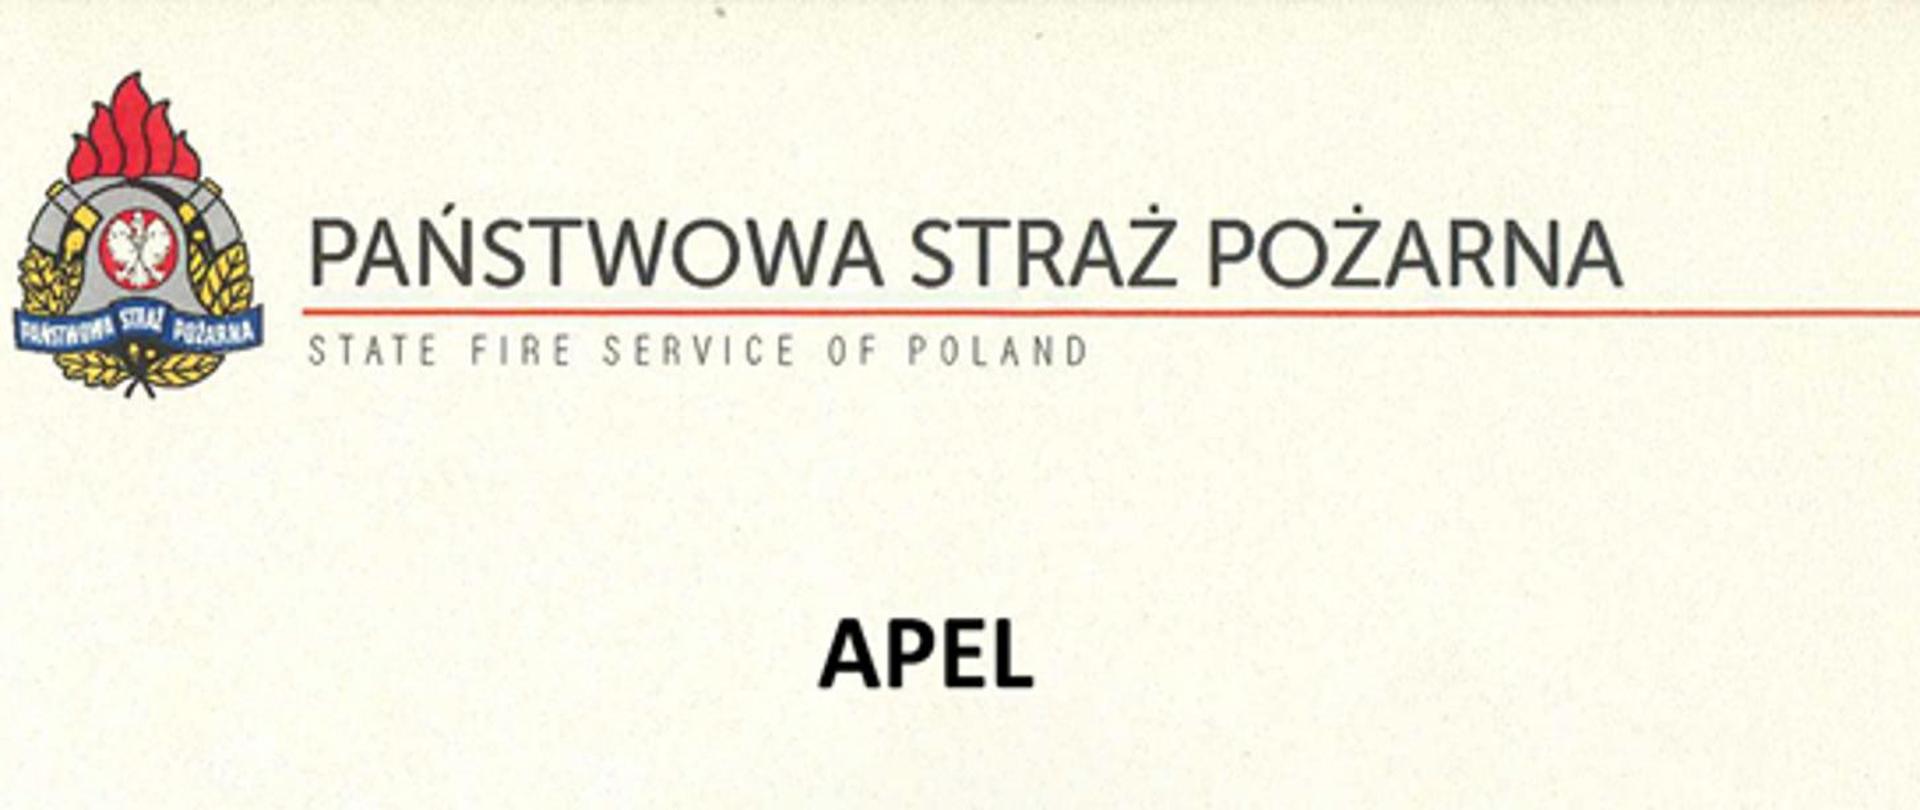 Na kremowym tle z lewej strony umieszczone logo Państwowej Straży Pożarnej. Obok loga po prawej stronie widnieje napis dużymi literami Państwowa Straż Pożarne podkreślony czerwoną kreską. Pod kreską mniejszymi literami napis w języku angielskim State fire service of Poland. U dołu centralnie widnieje napis APEL. 